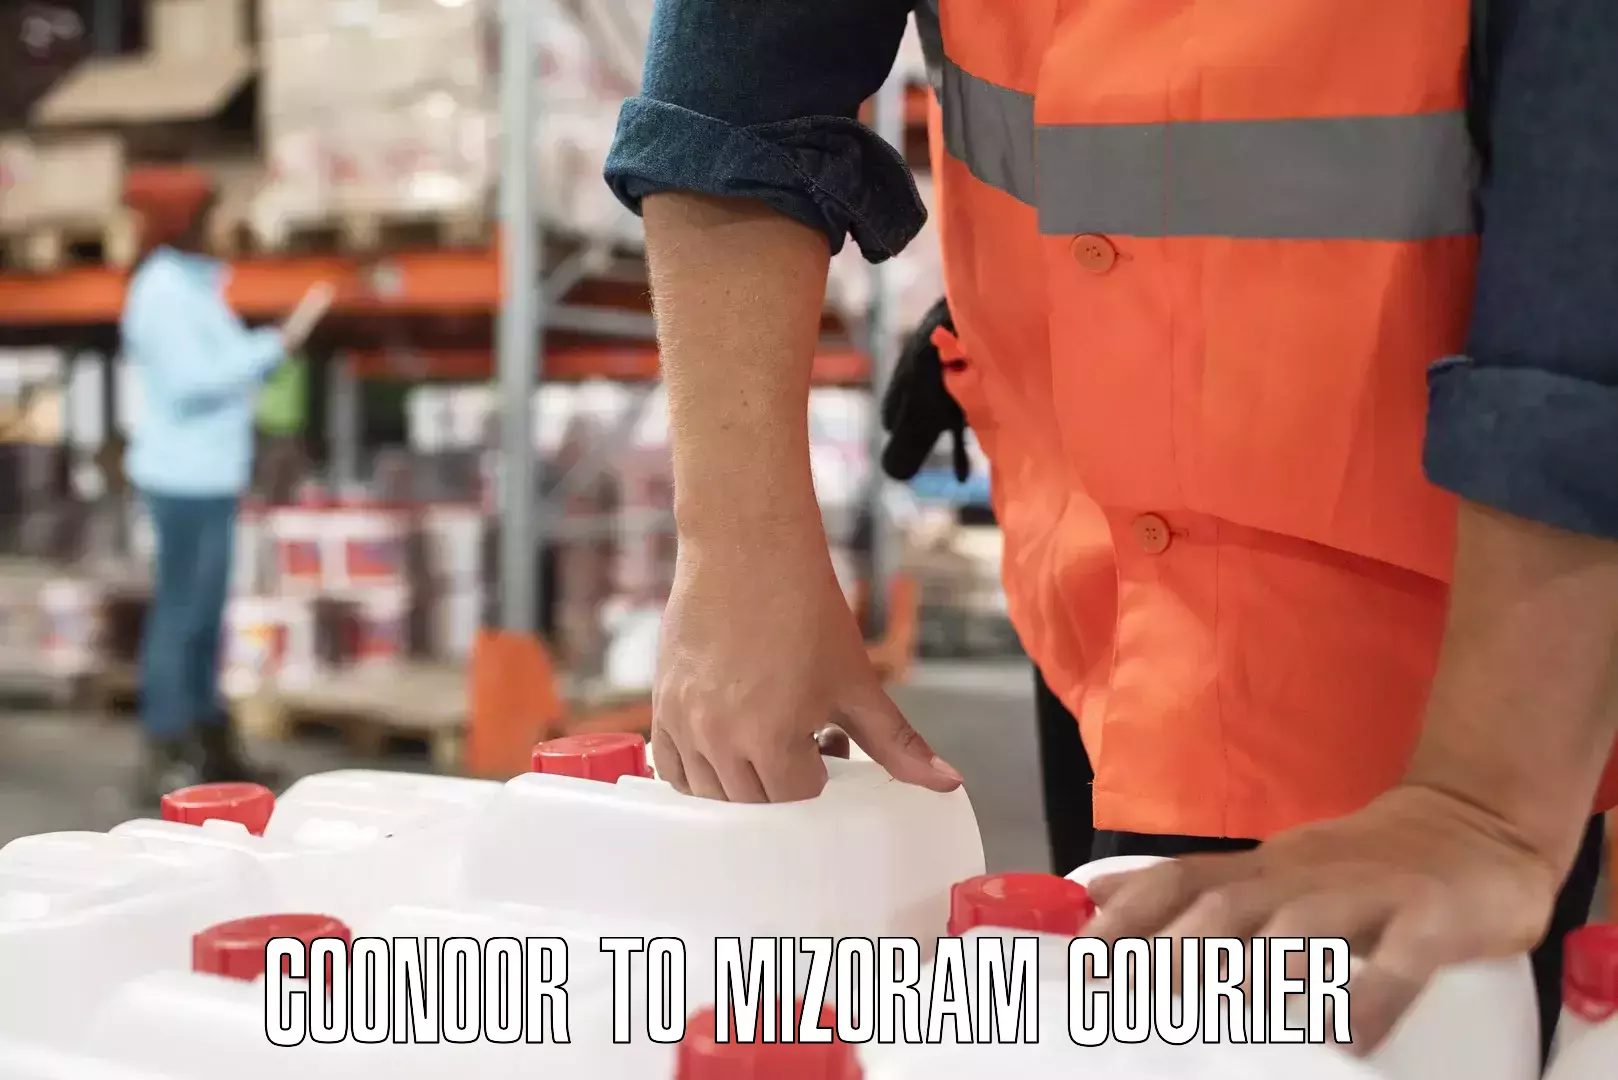 Custom courier strategies Coonoor to Mizoram